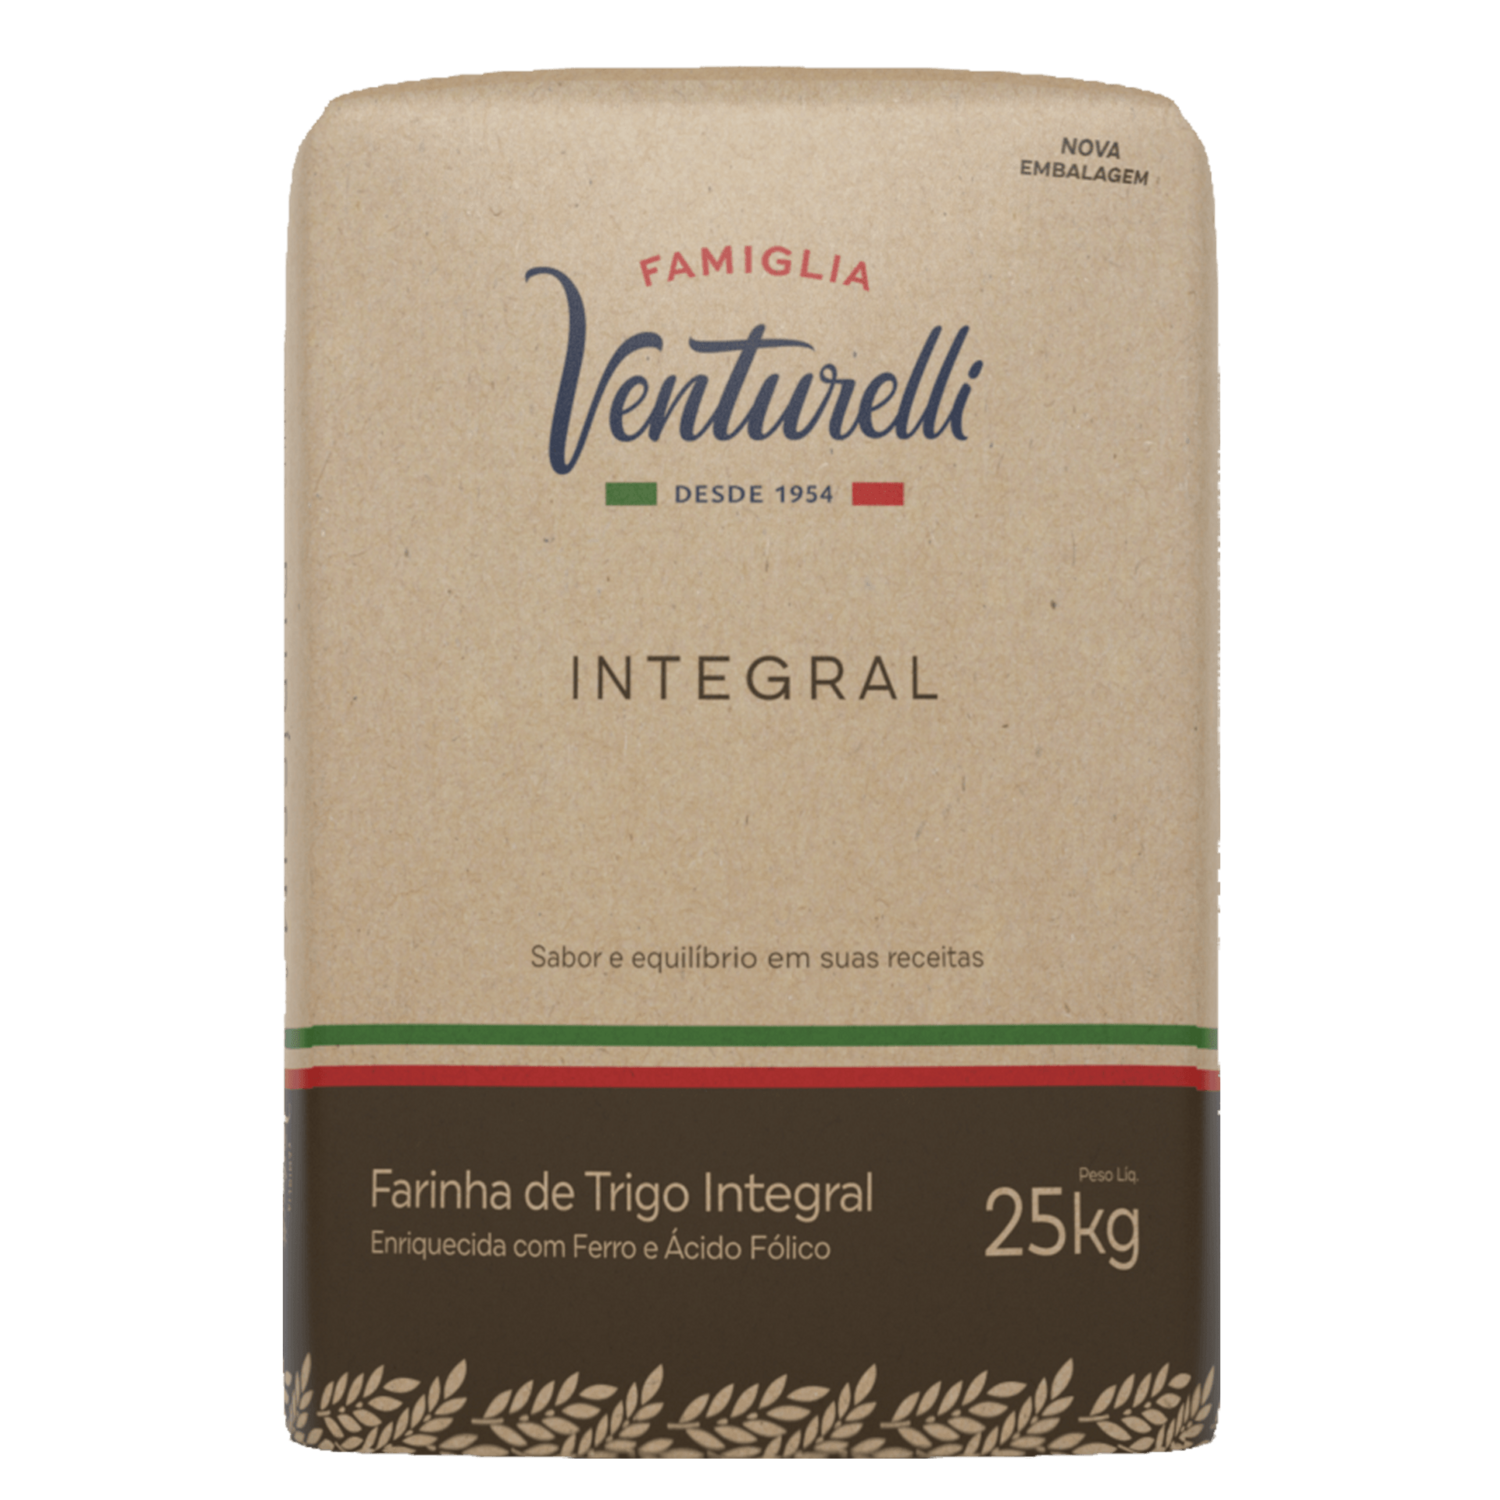 Farinha de Trigo Venturelli Integral – 25kg